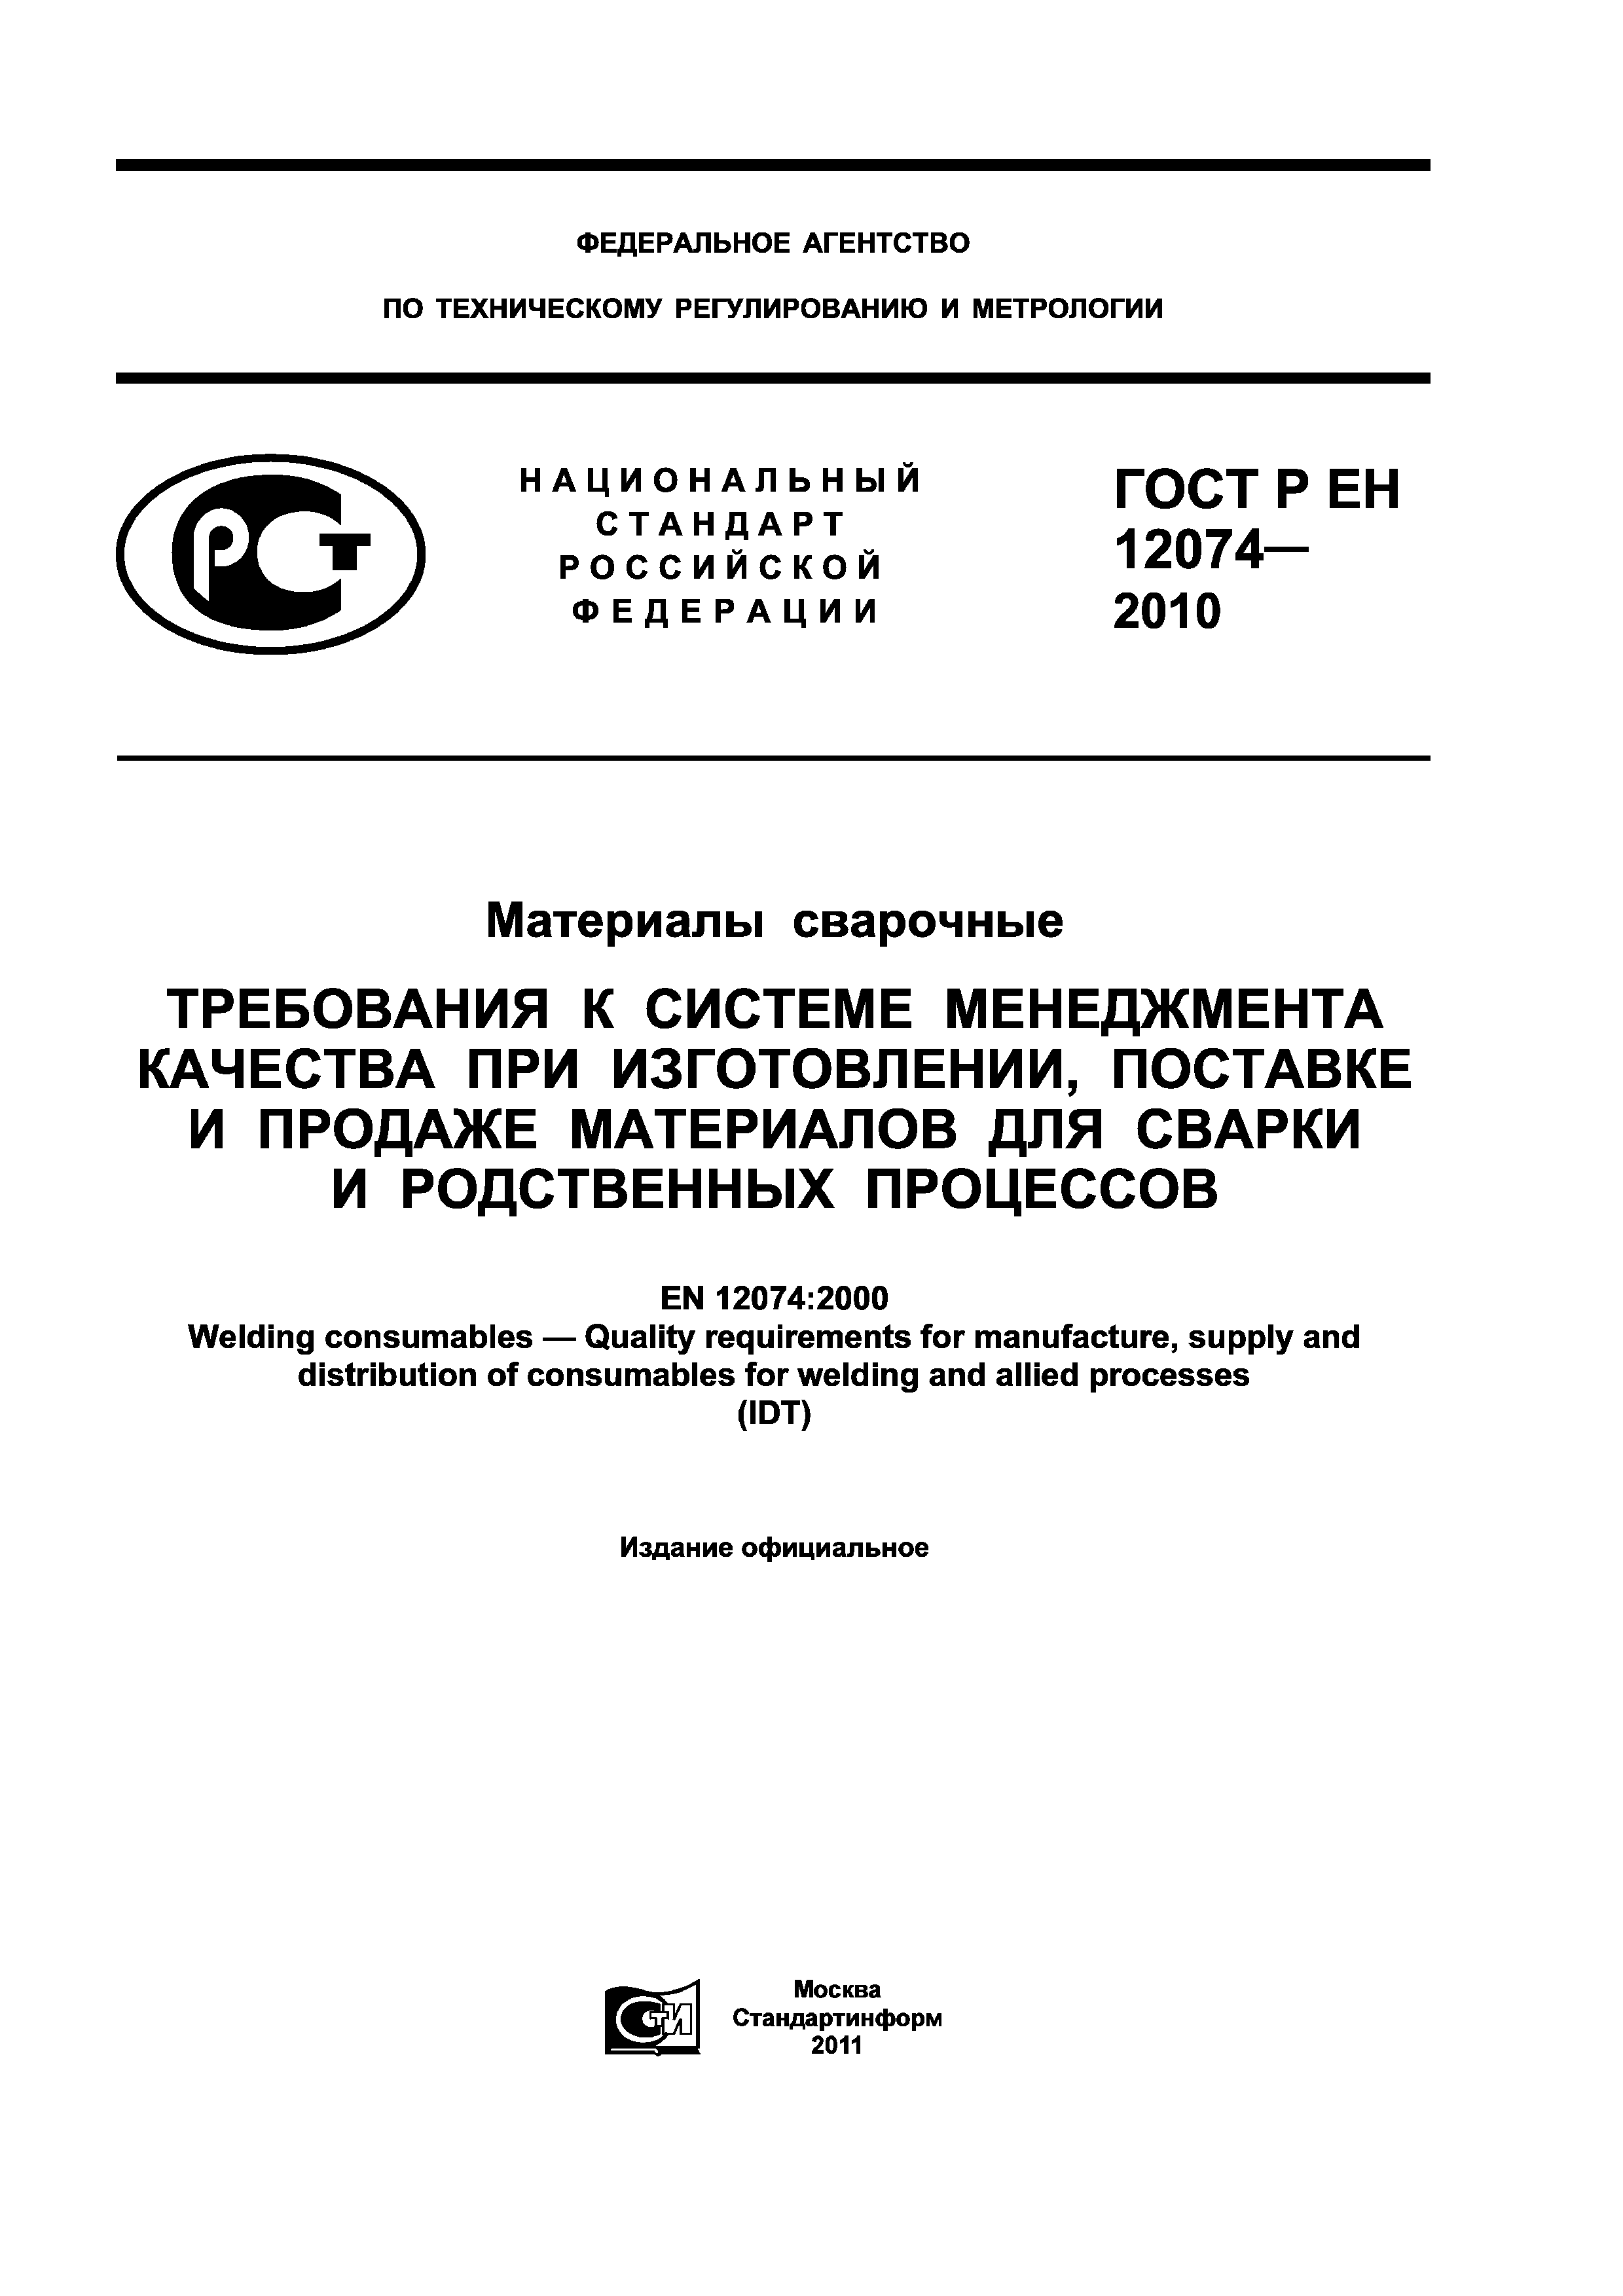 ГОСТ Р ЕН 12074-2010